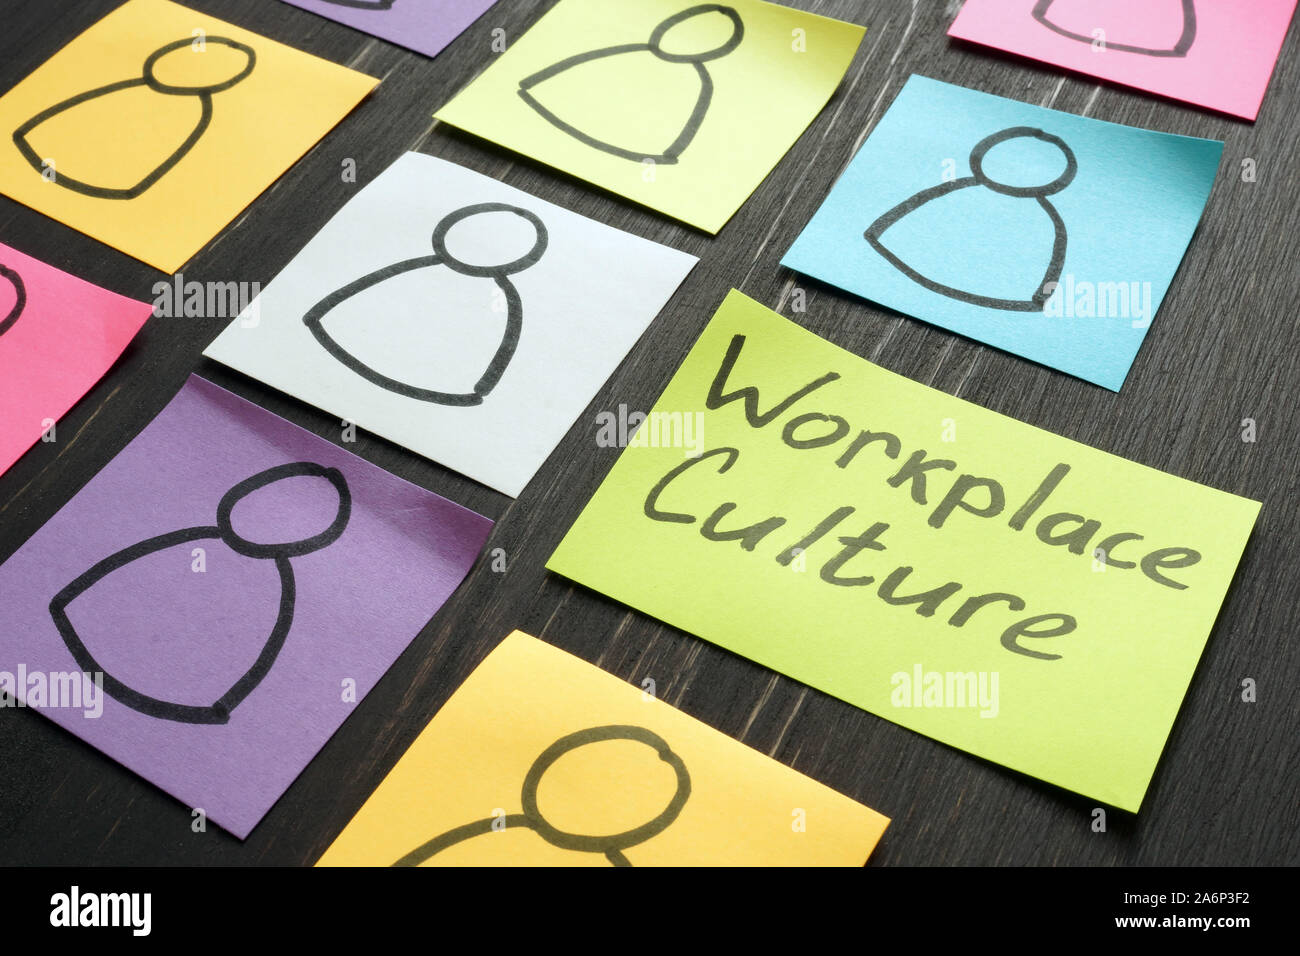 Arbeitsplatz Kultur Konzept. Silhouetten auf Blatt gezeichnet. Stockfoto